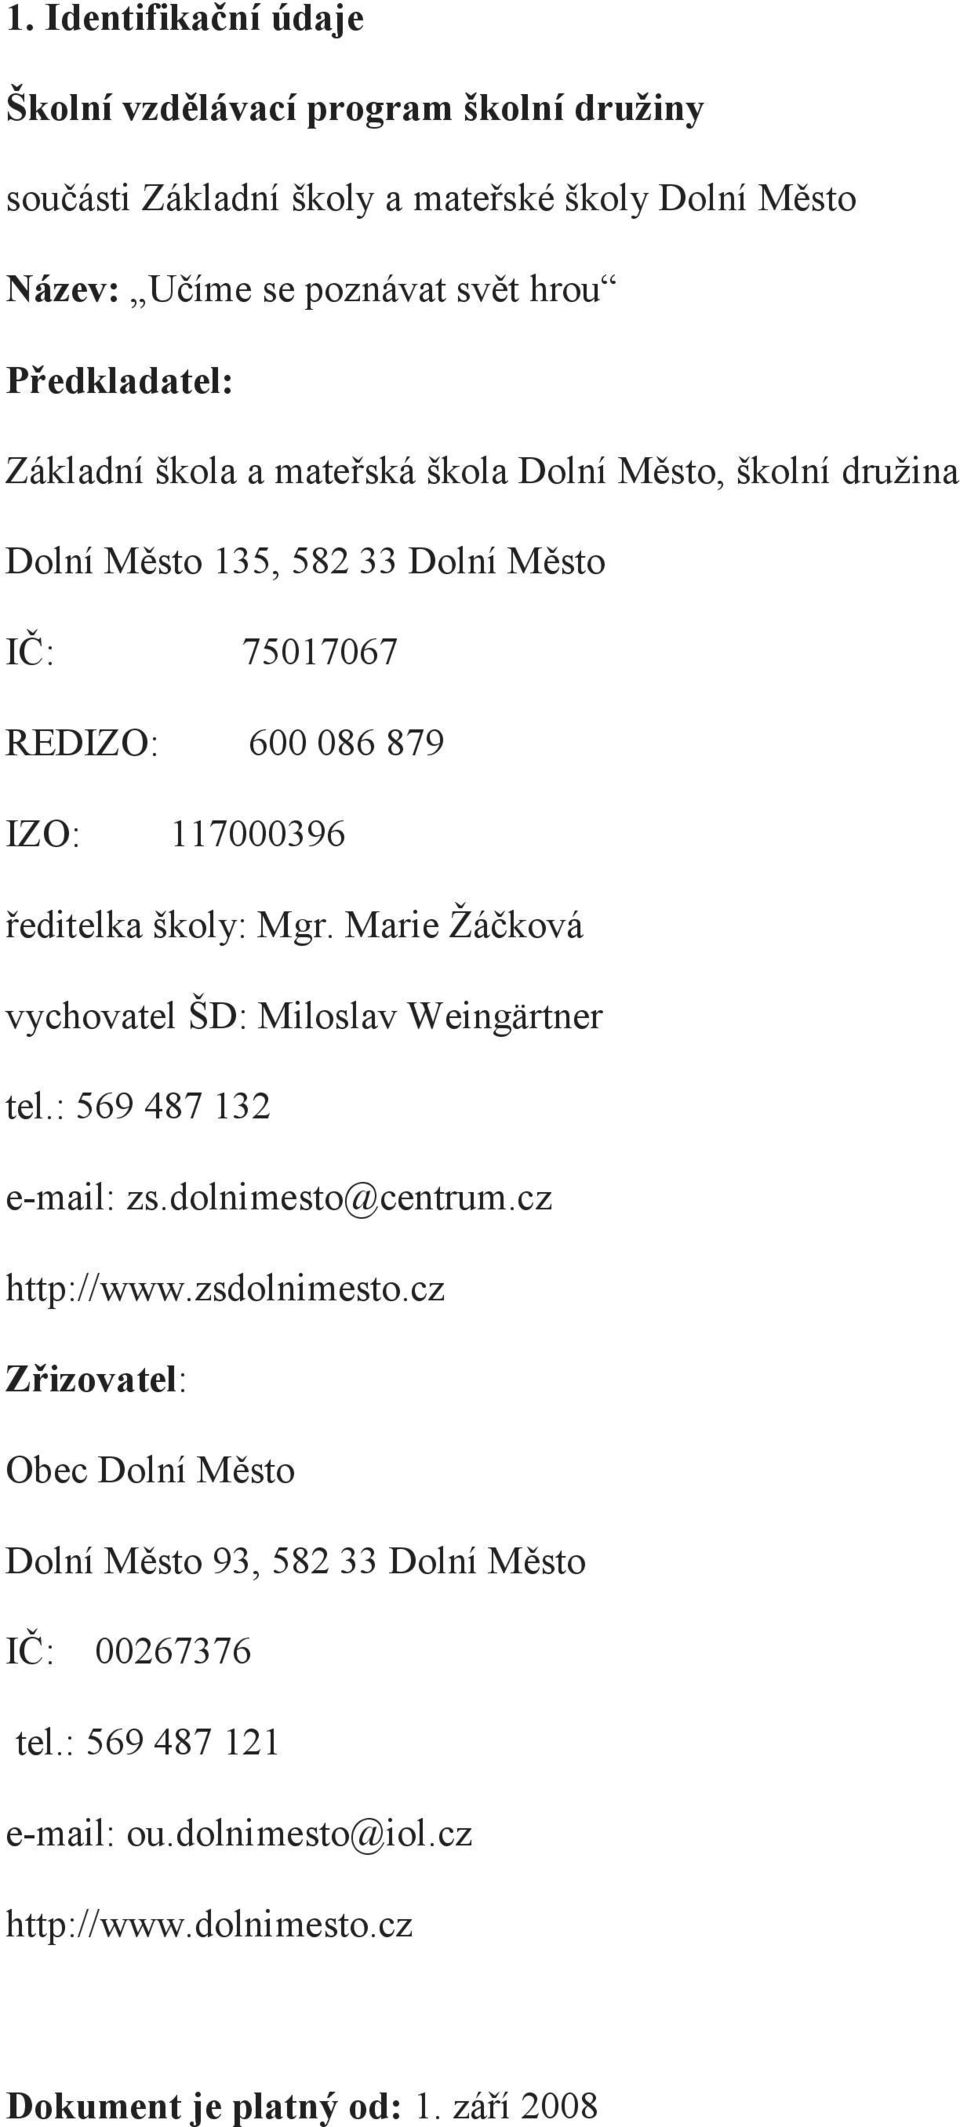 ředitelka školy: Mgr. Marie Žáčková vychovatel ŠD: Miloslav Weingärtner tel.: 569 487 132 e-mail: zs.dolnimesto@centrum.cz http://www.zsdolnimesto.